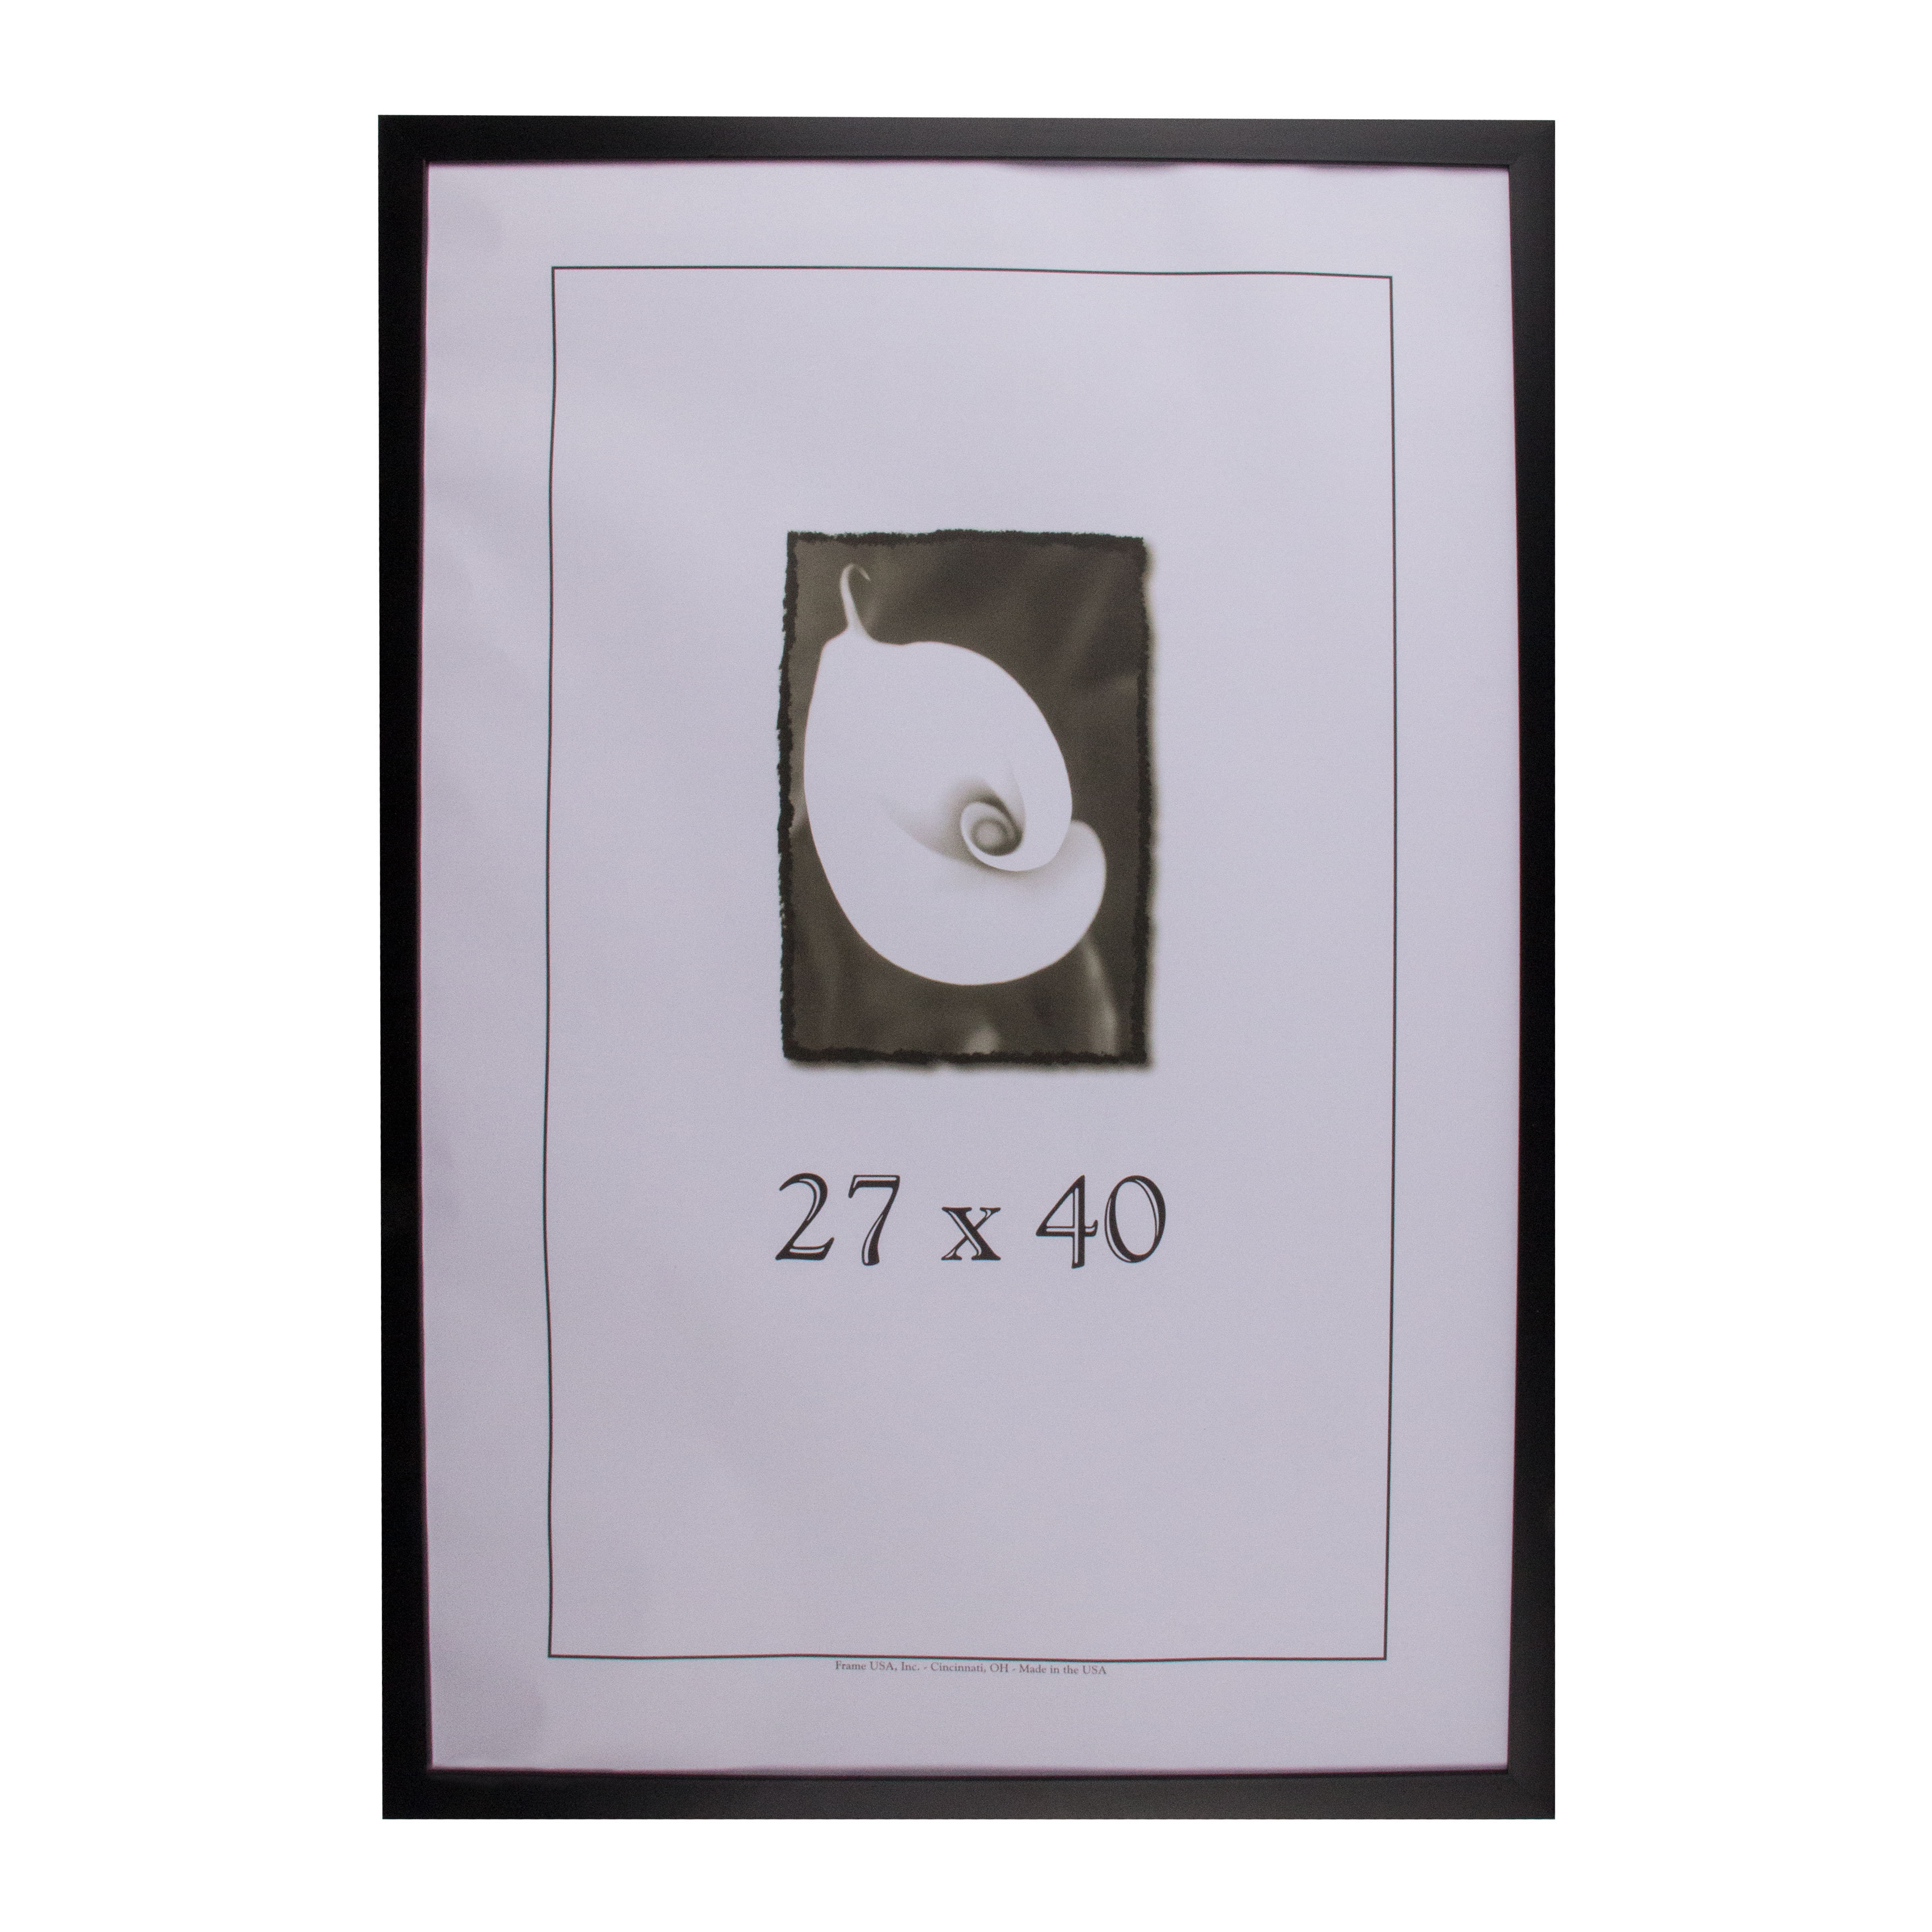 40×27 poster frame